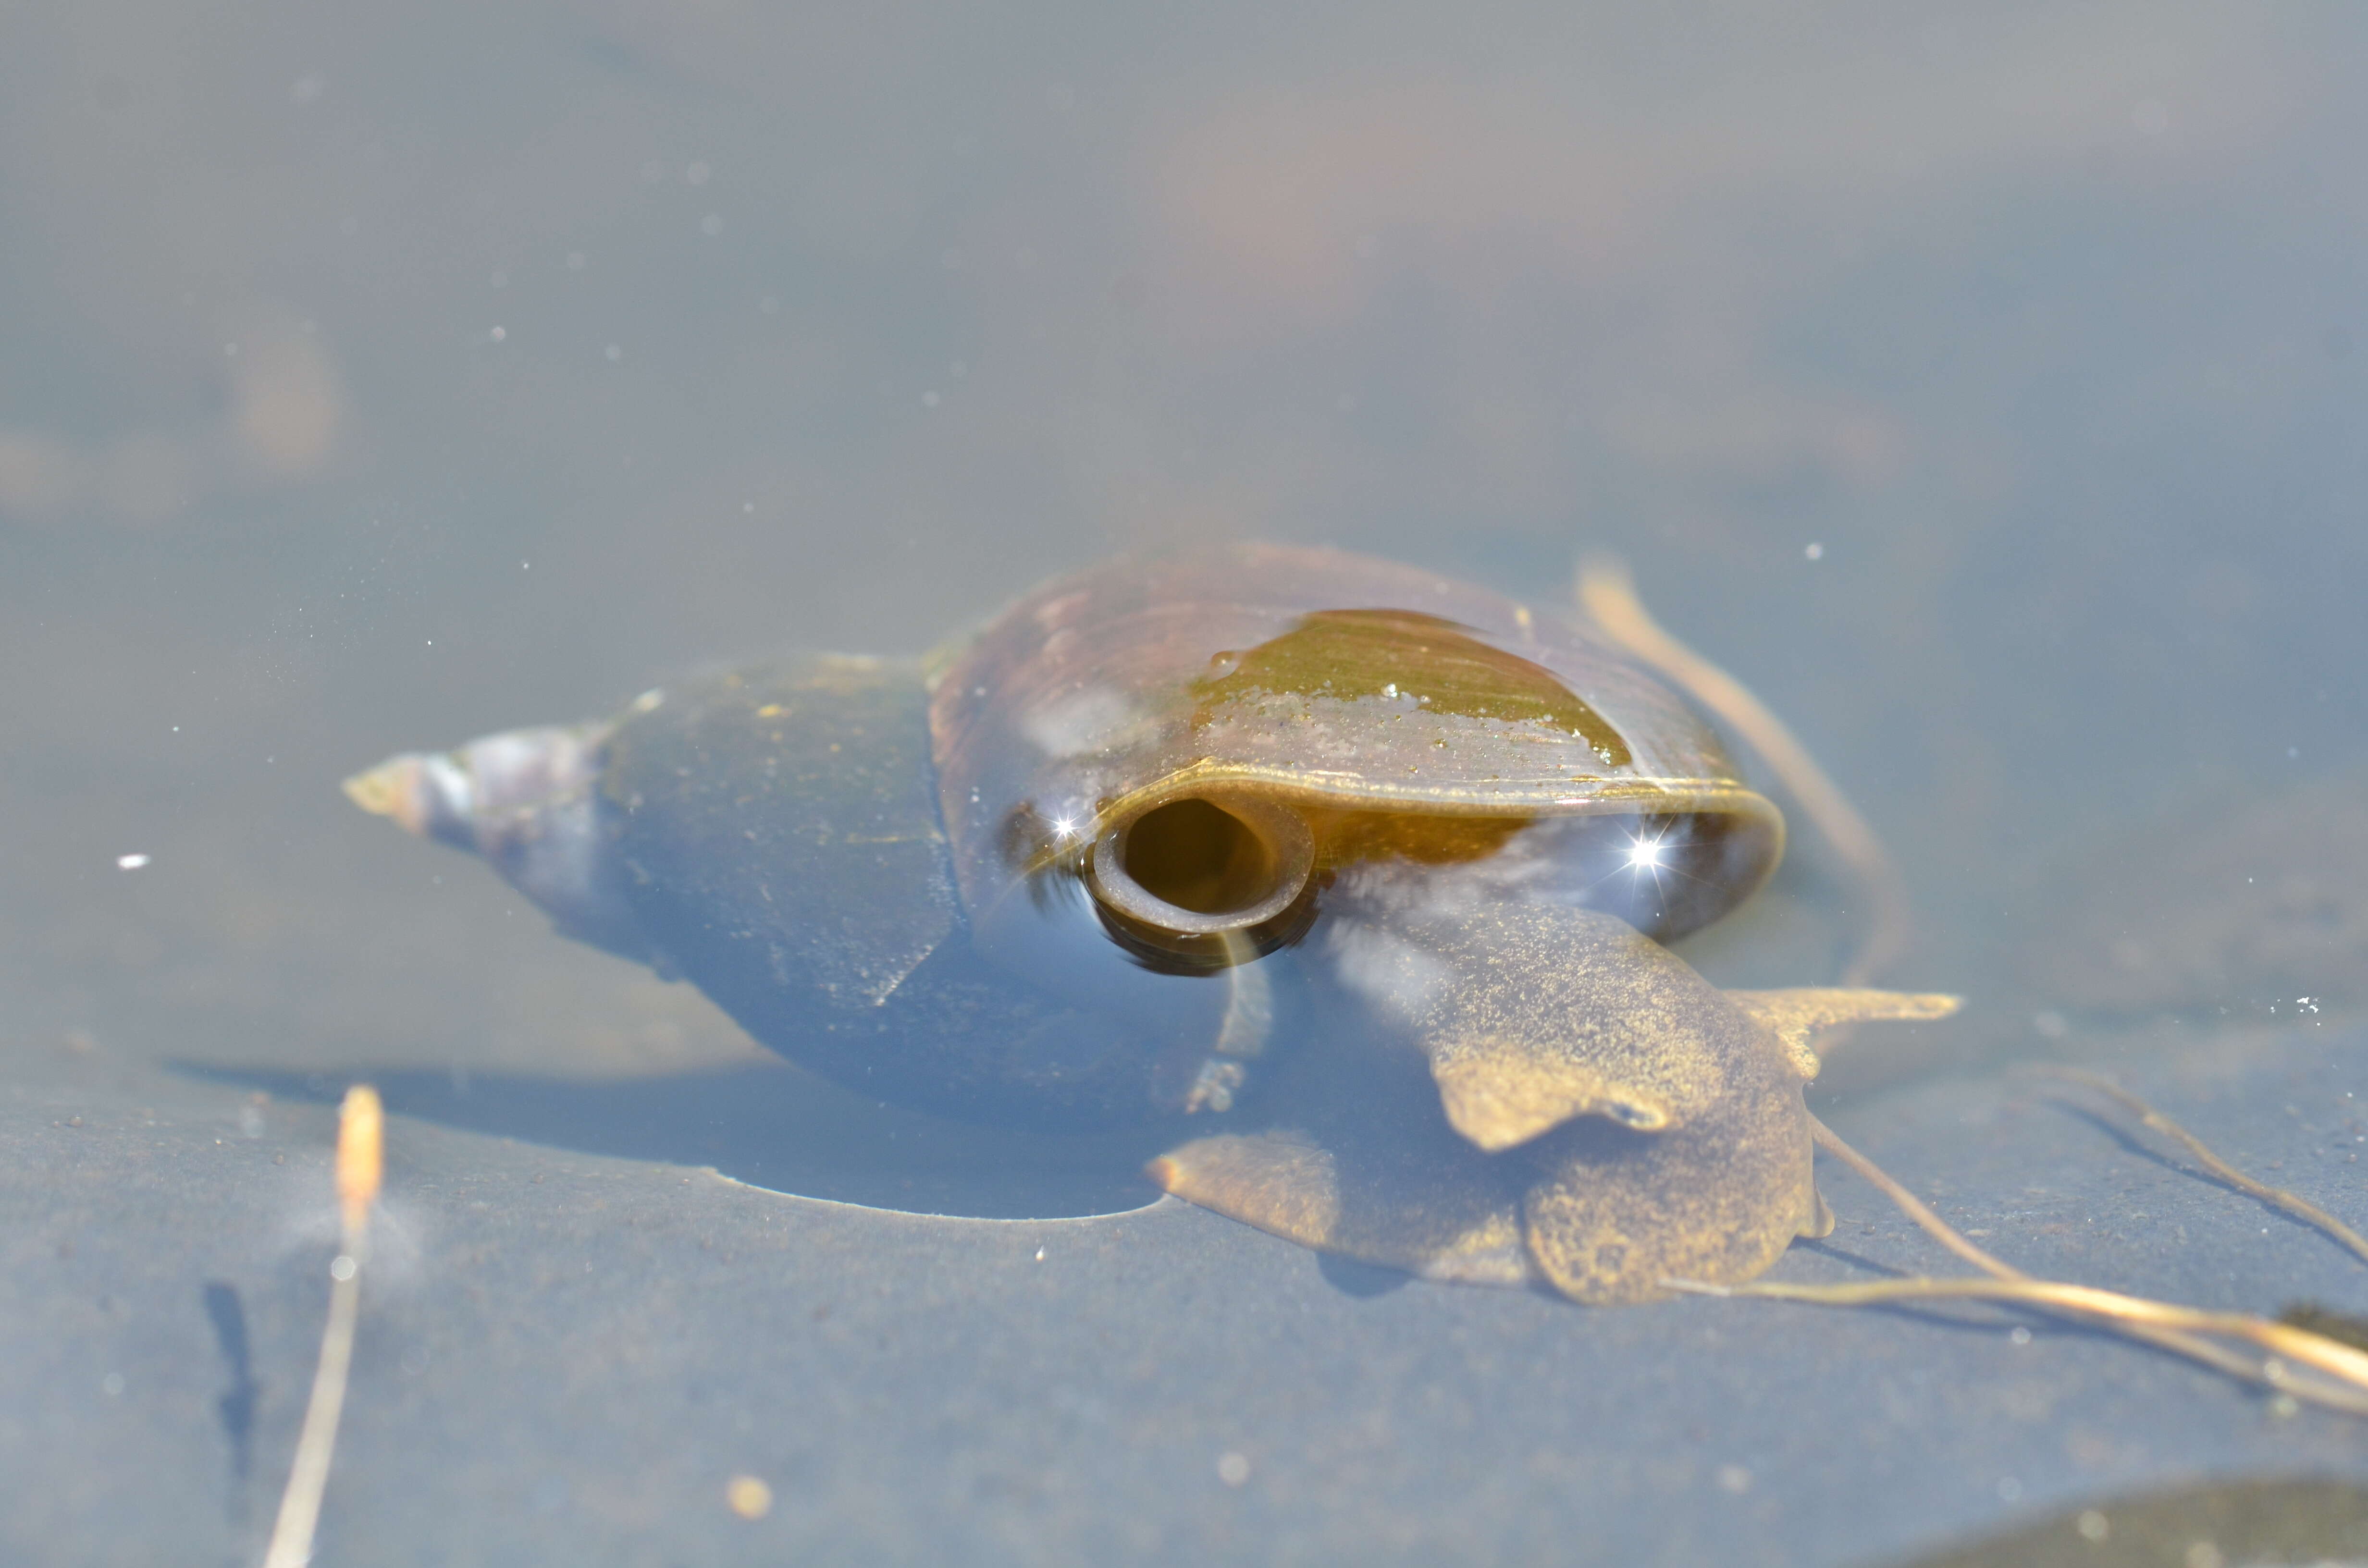 Image of Pond Snails